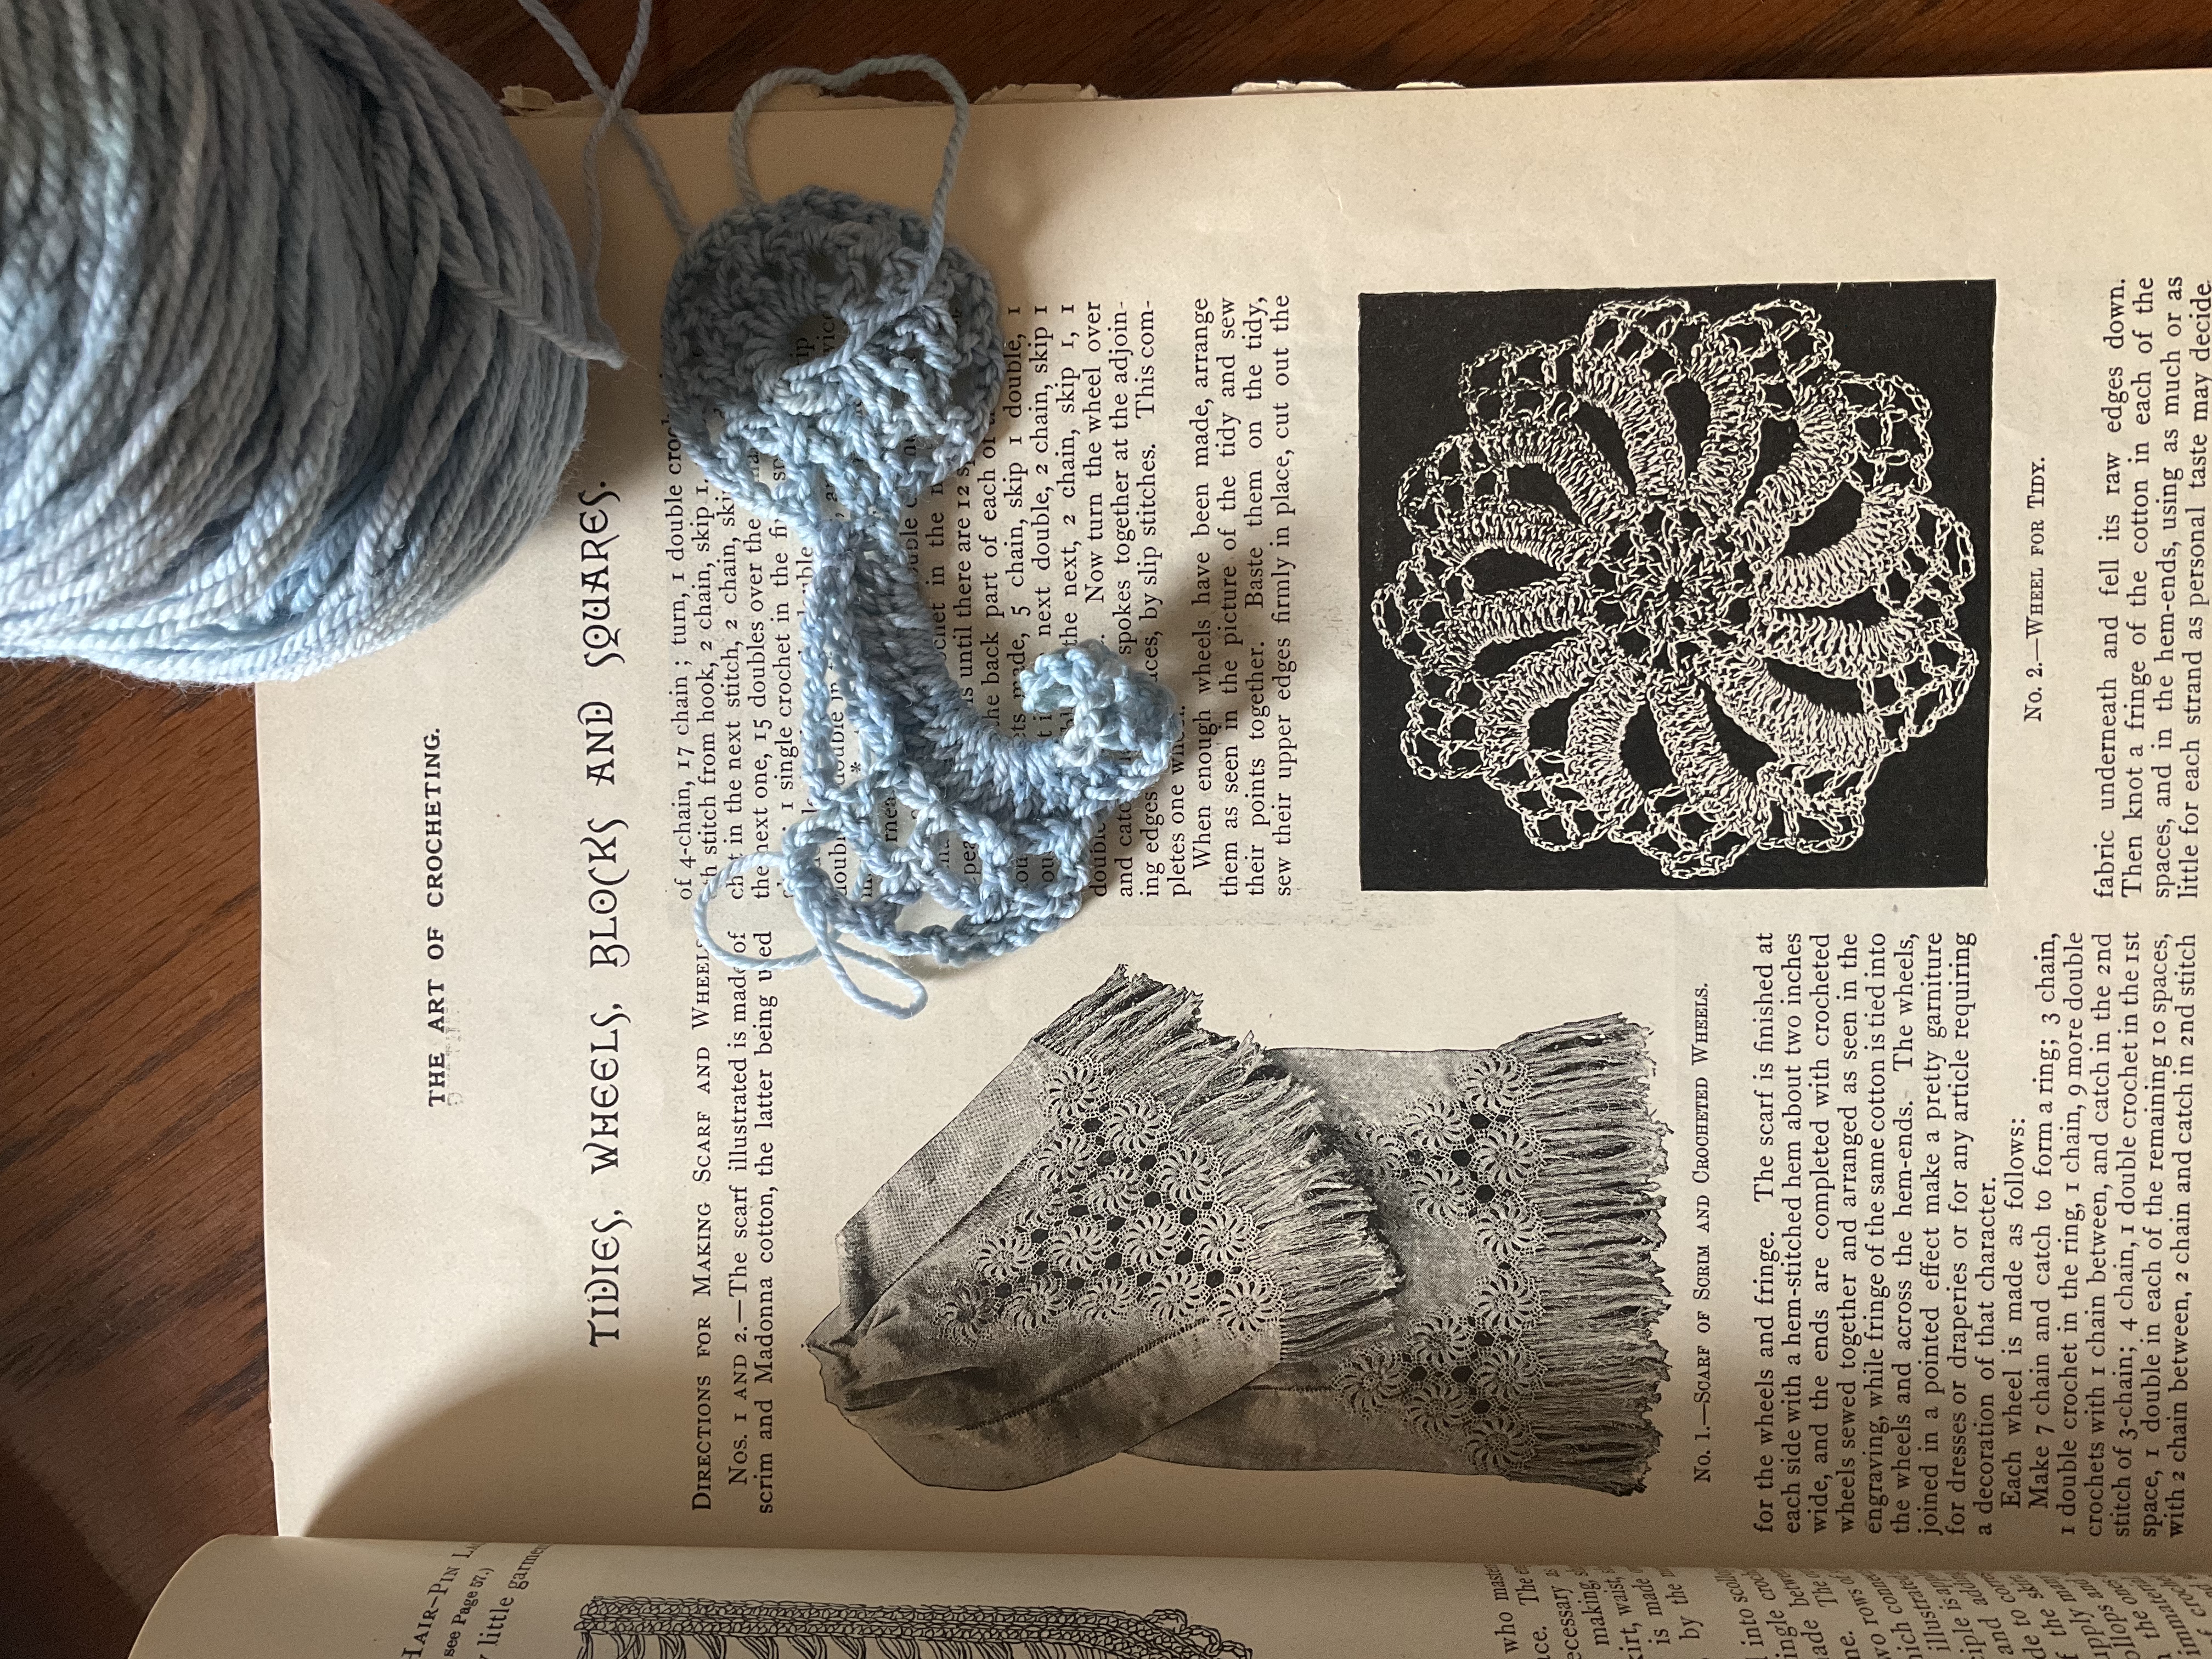 The art of crochet in progress